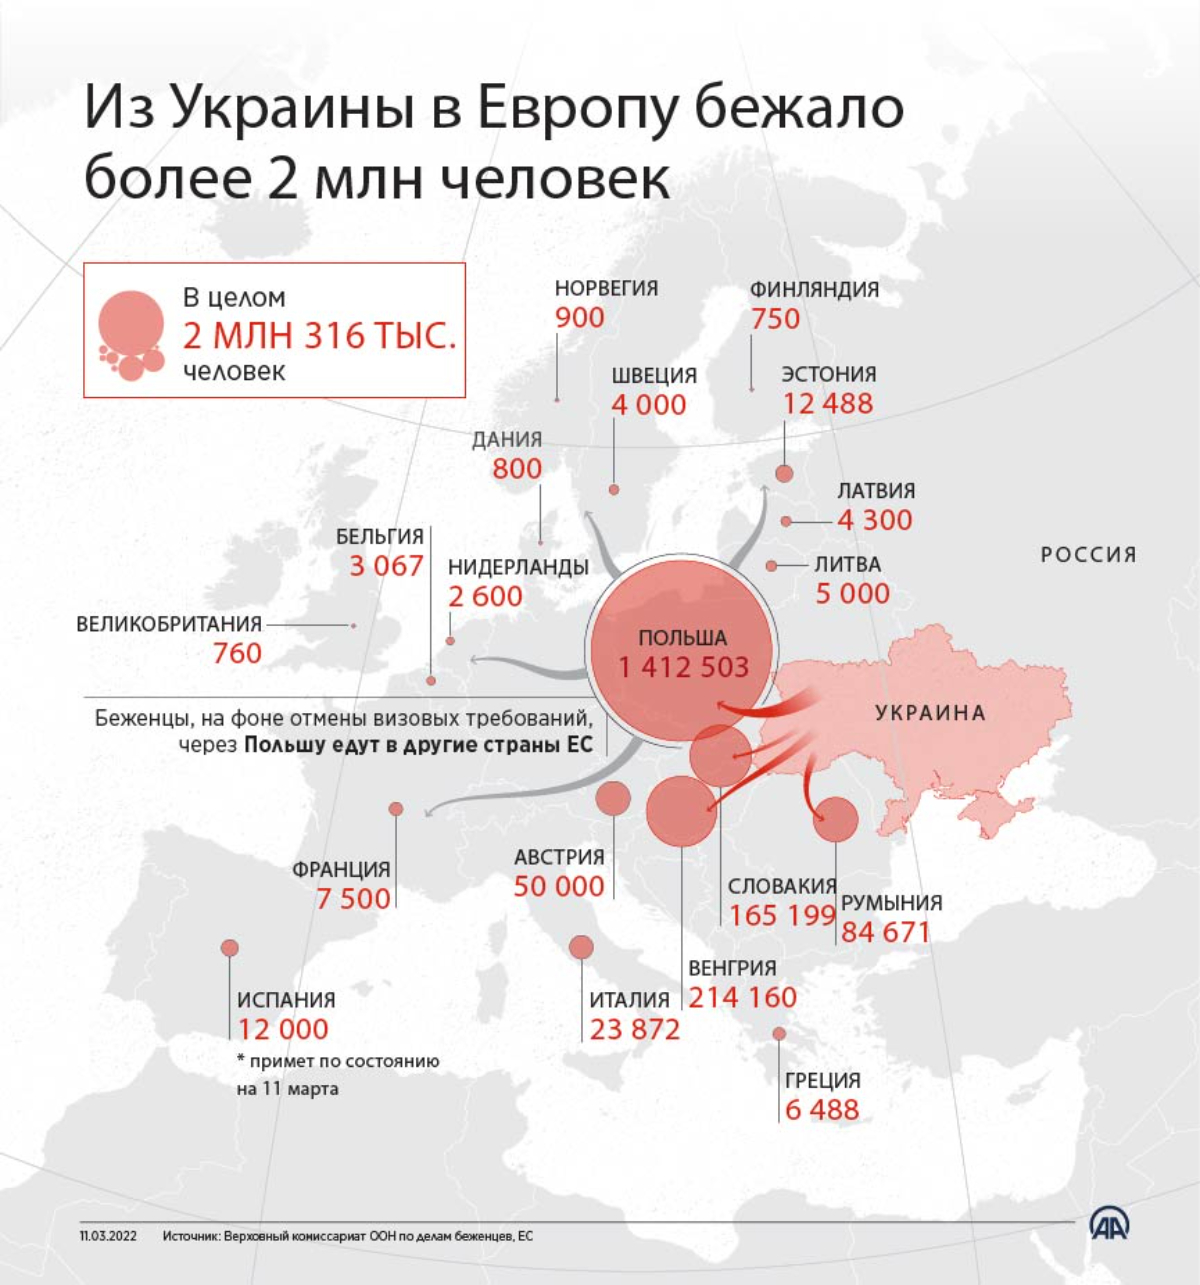 Страны за украину список